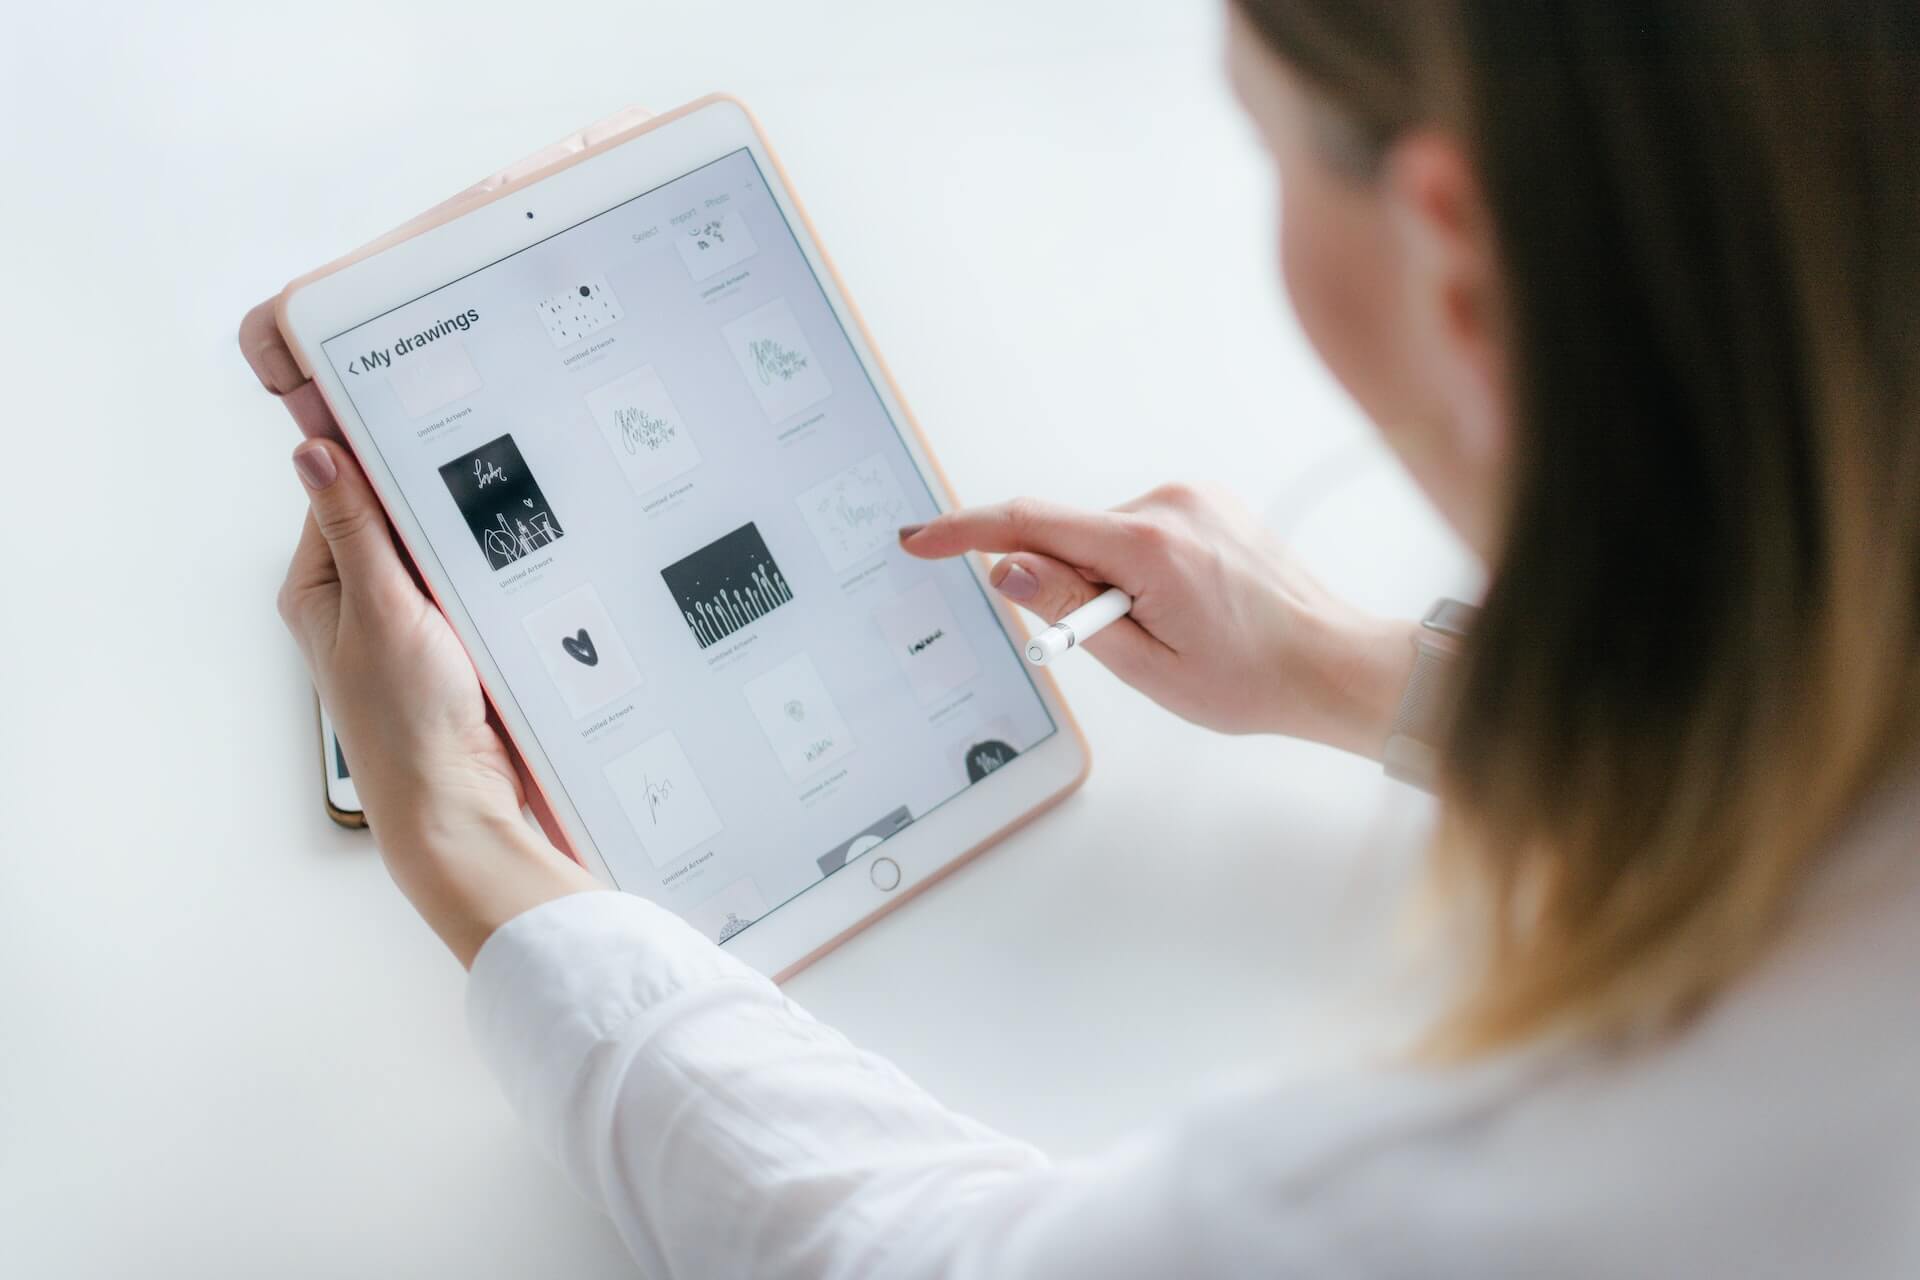 Akcesoria do iPada – jak ich wybór może ułatwić życie?